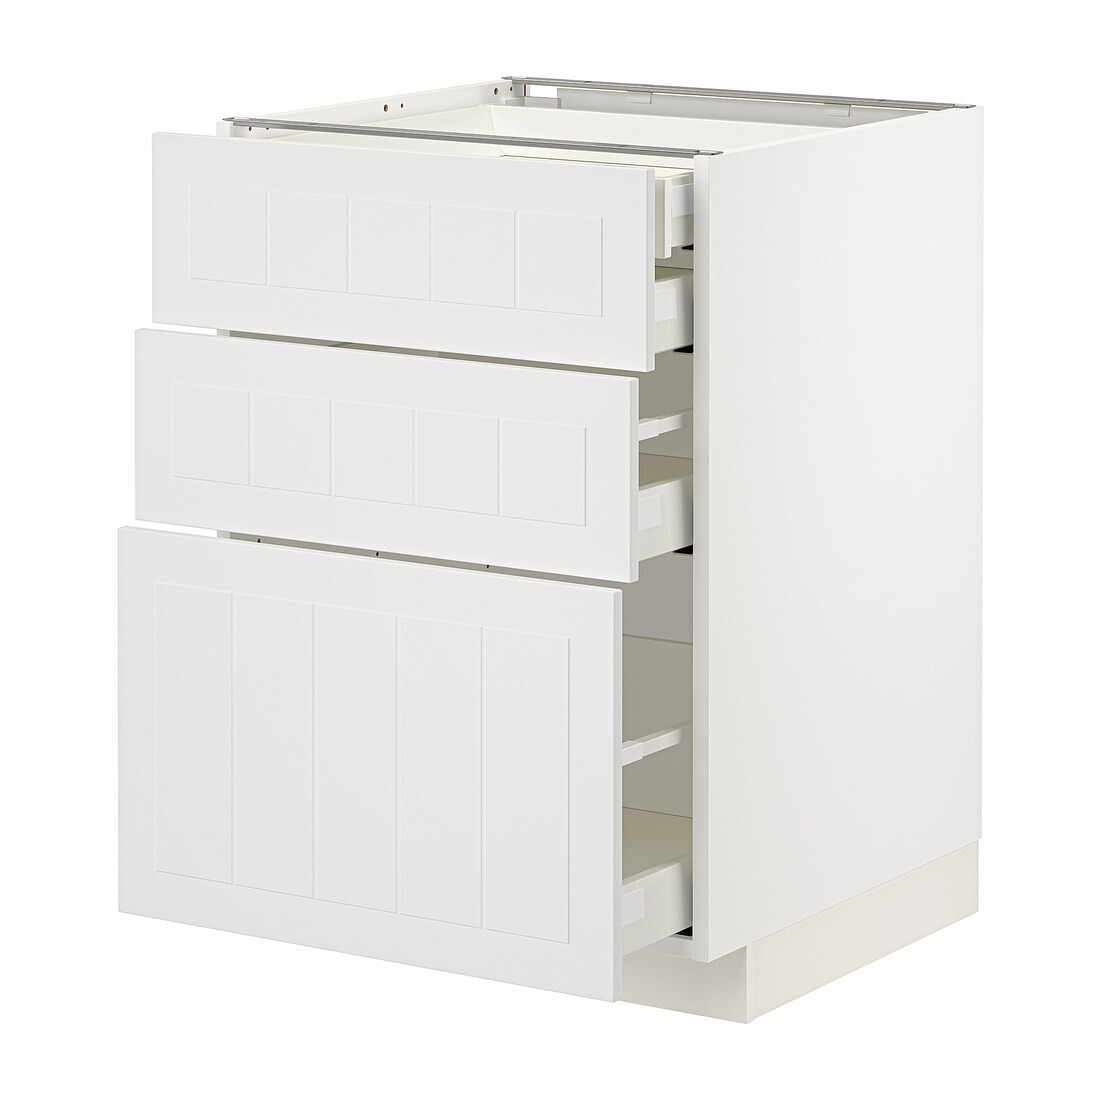 IKEA METOD МЕТОД / MAXIMERA МАКСИМЕРА Напольный шкаф с ящиками, белый / Stensund белый, 60x60 см 29409461 294.094.61